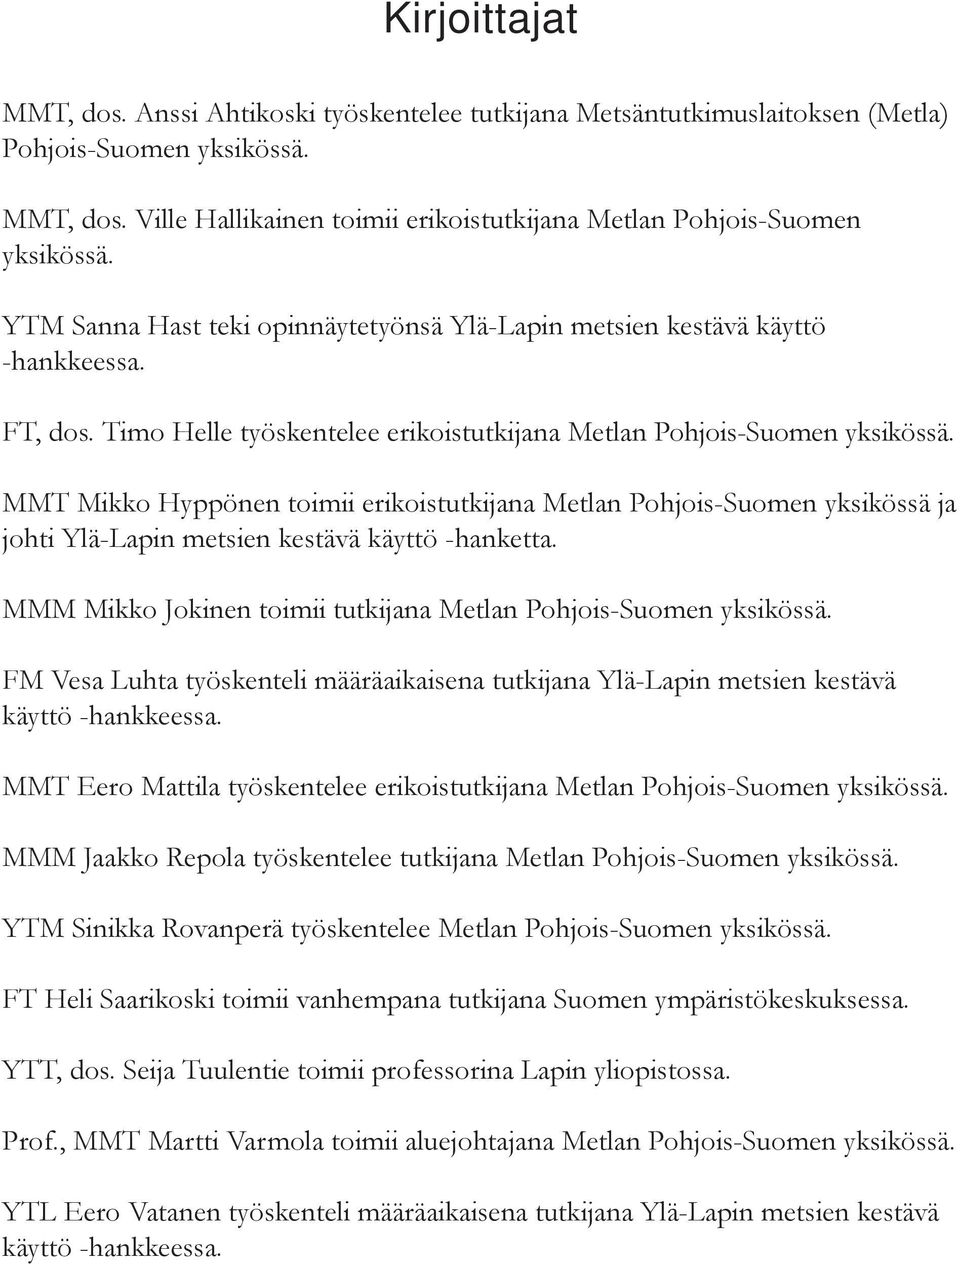 MMT Mikko Hyppönen toimii erikoistutkijana Metlan Pohjois-Suomen yksikössä ja johti Ylä-Lapin metsien kestävä käyttö -hanketta. MMM Mikko Jokinen toimii tutkijana Metlan Pohjois-Suomen yksikössä.